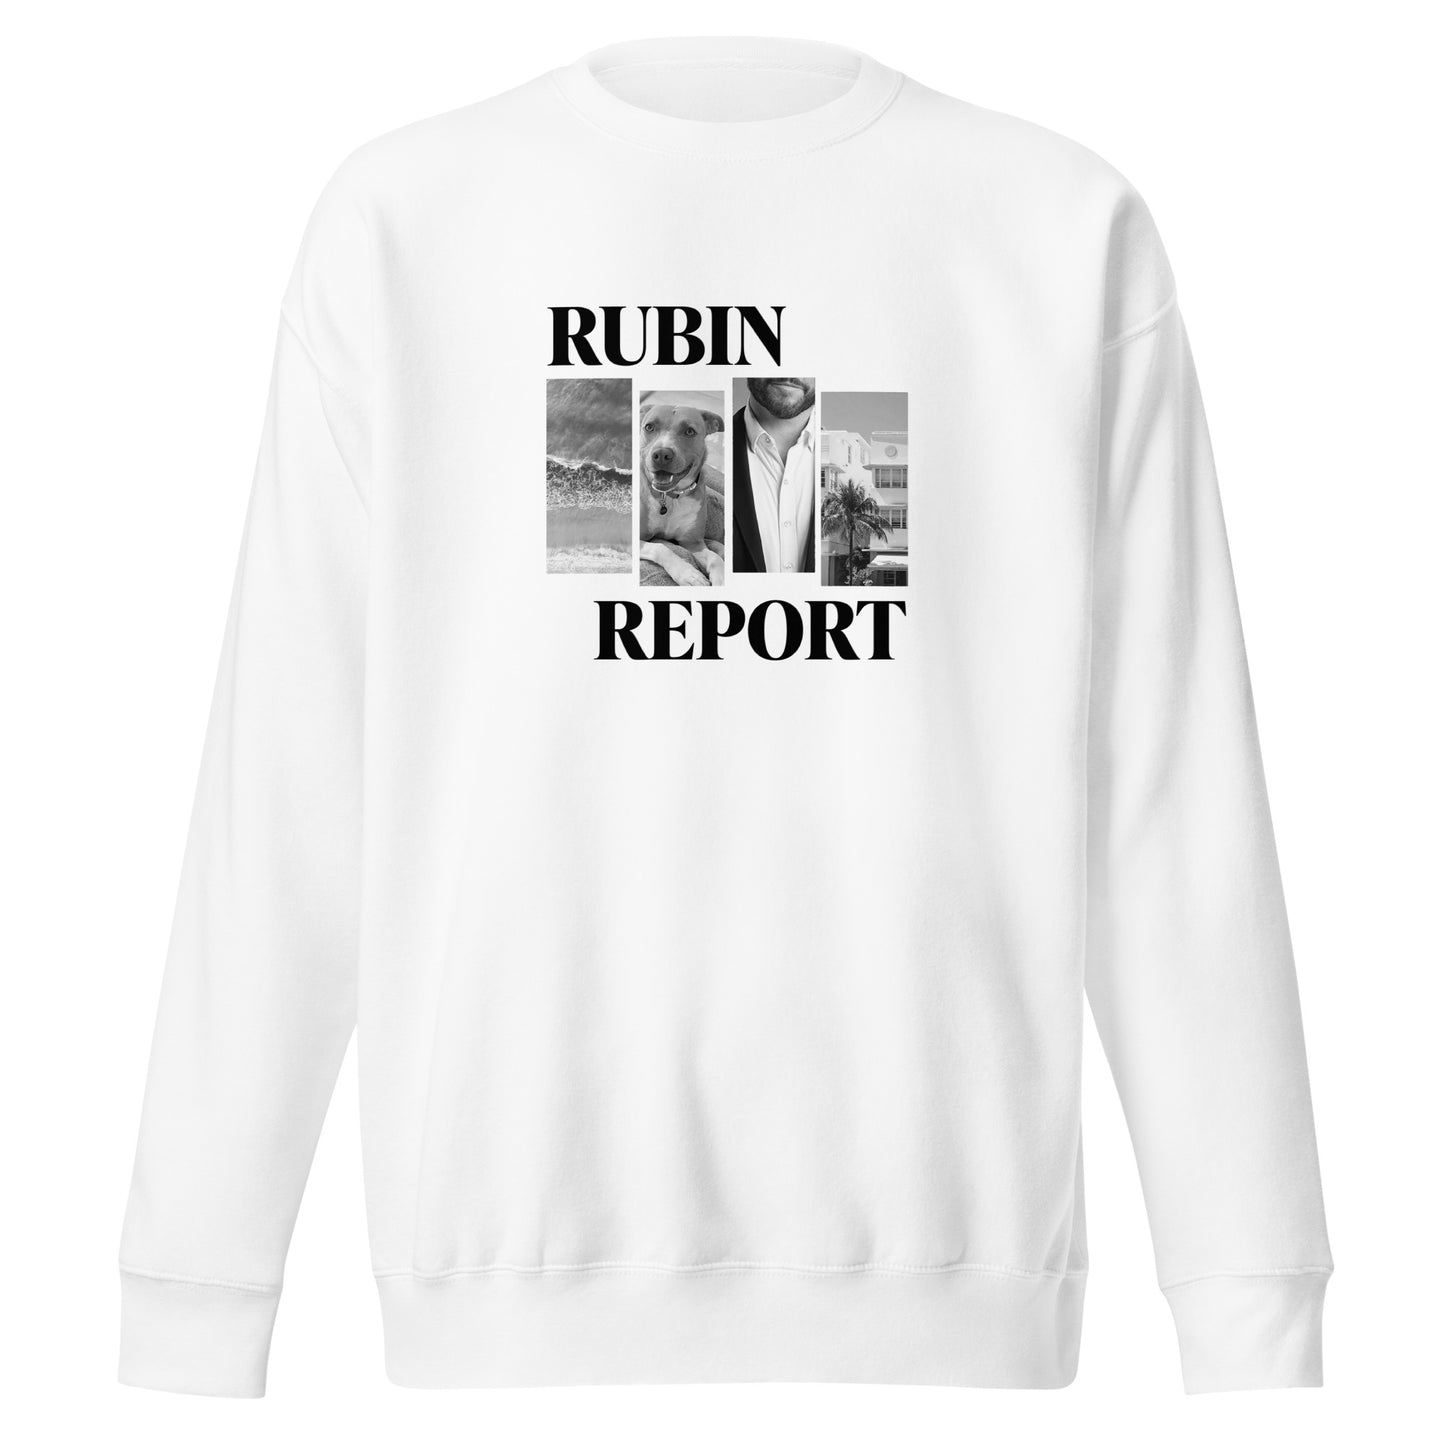 Rubin Report Lifestyle Sweatshirt